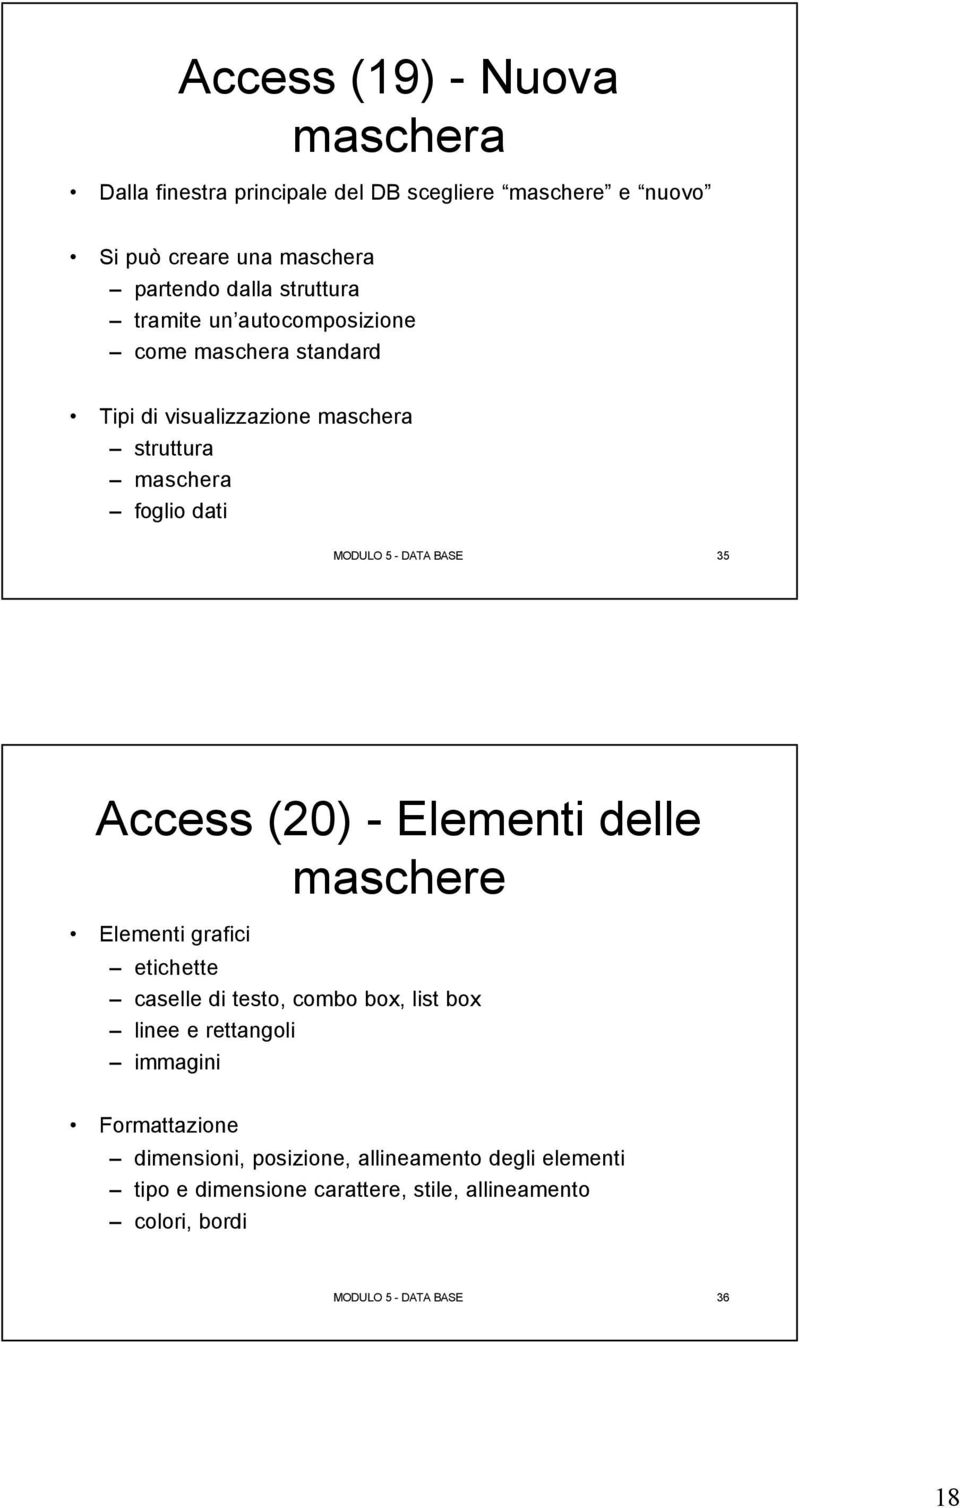 Access (20) - Elementi delle maschere Elementi grafici etichette caselle di testo, combo box, list box linee e rettangoli immagini